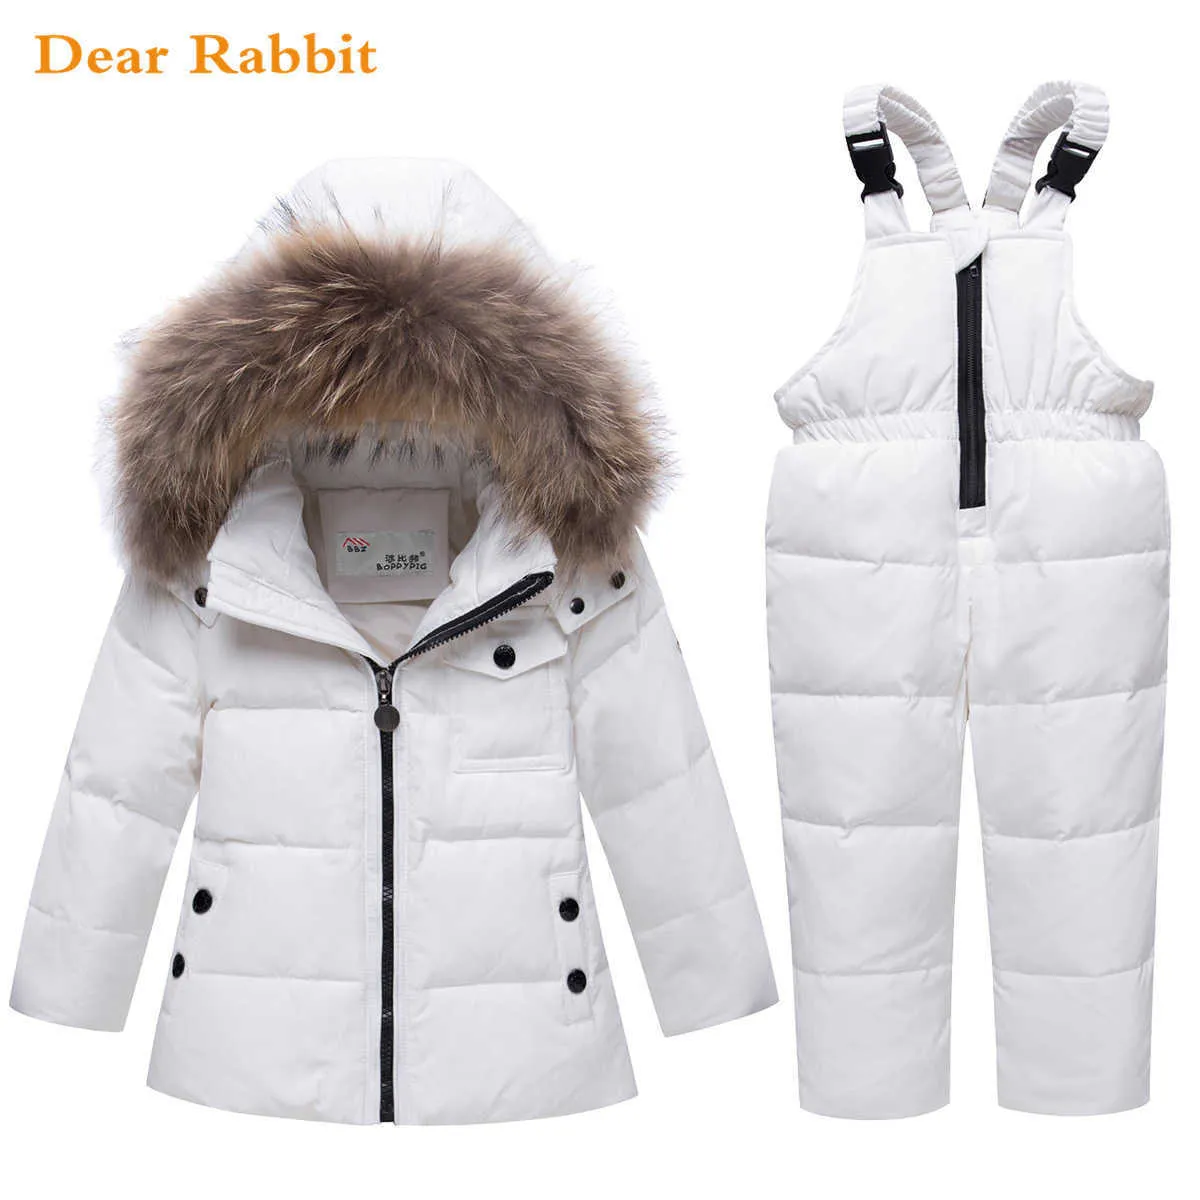 パーカー本物の毛皮の少年の赤ちゃん冬の薄いジャケット暖かいキッズコート子供スキースノースーツ服銀防水服セットH0909